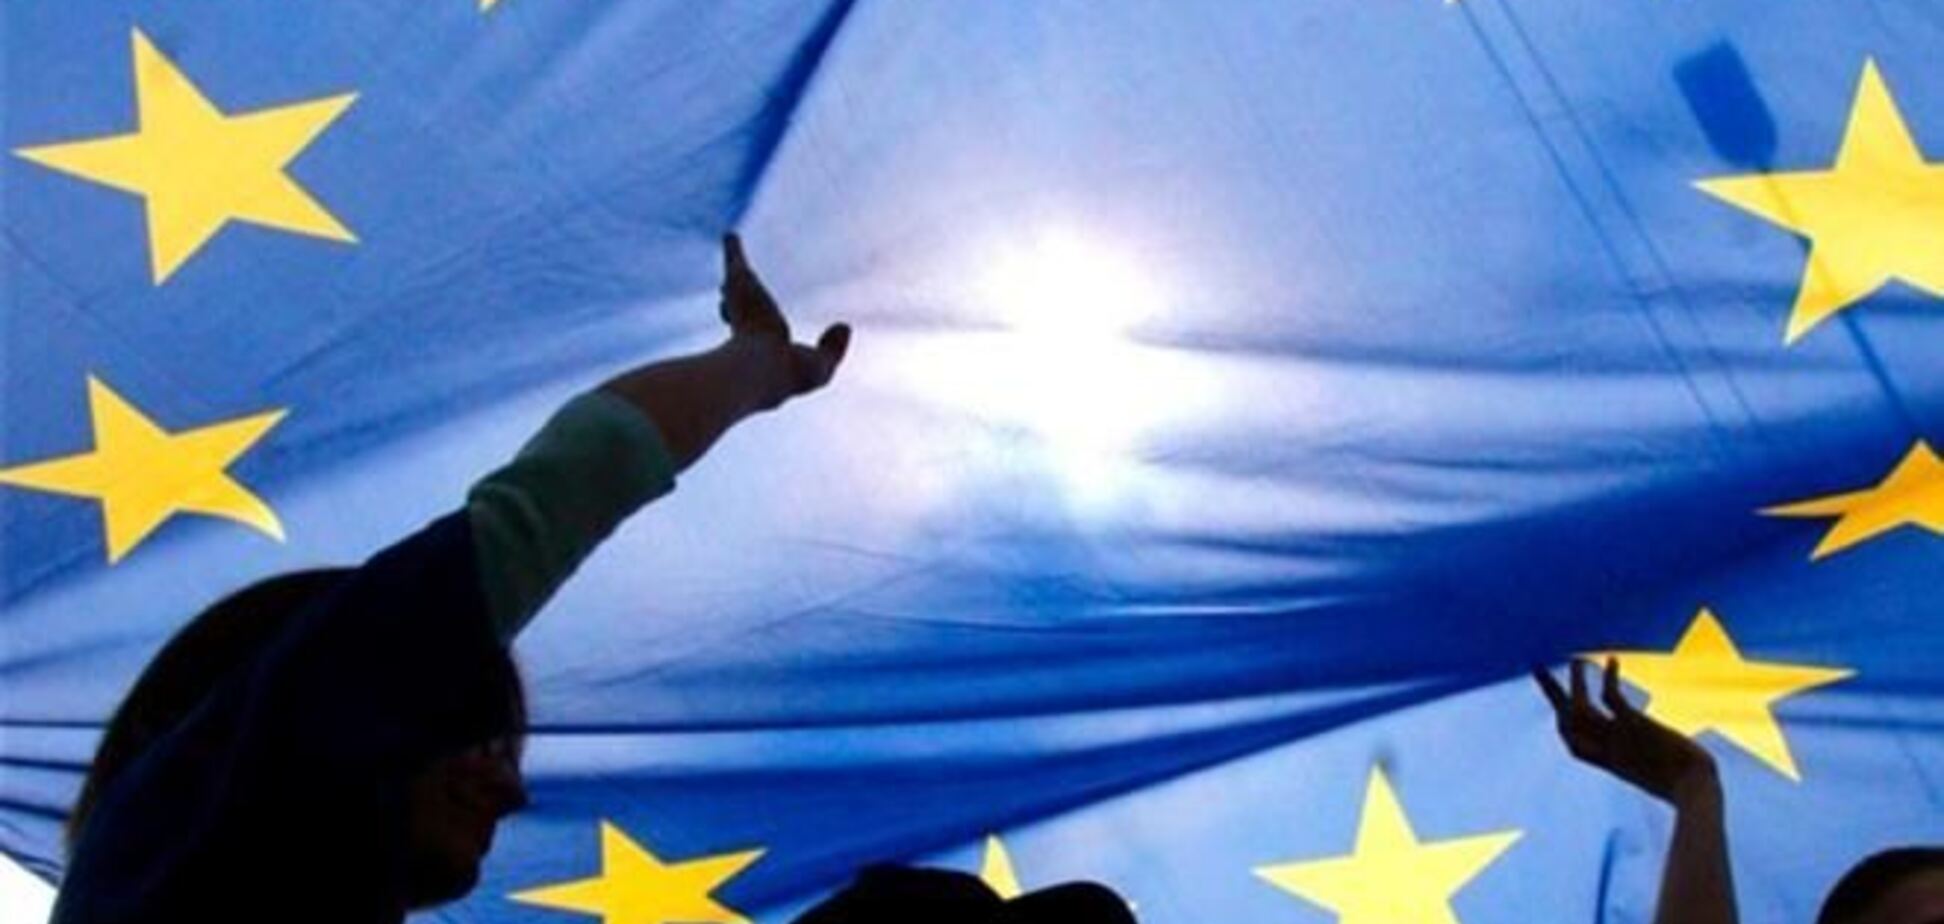 ЕС намерен вести пропаганду в отношении государств Восточного партнерства – СМИ 